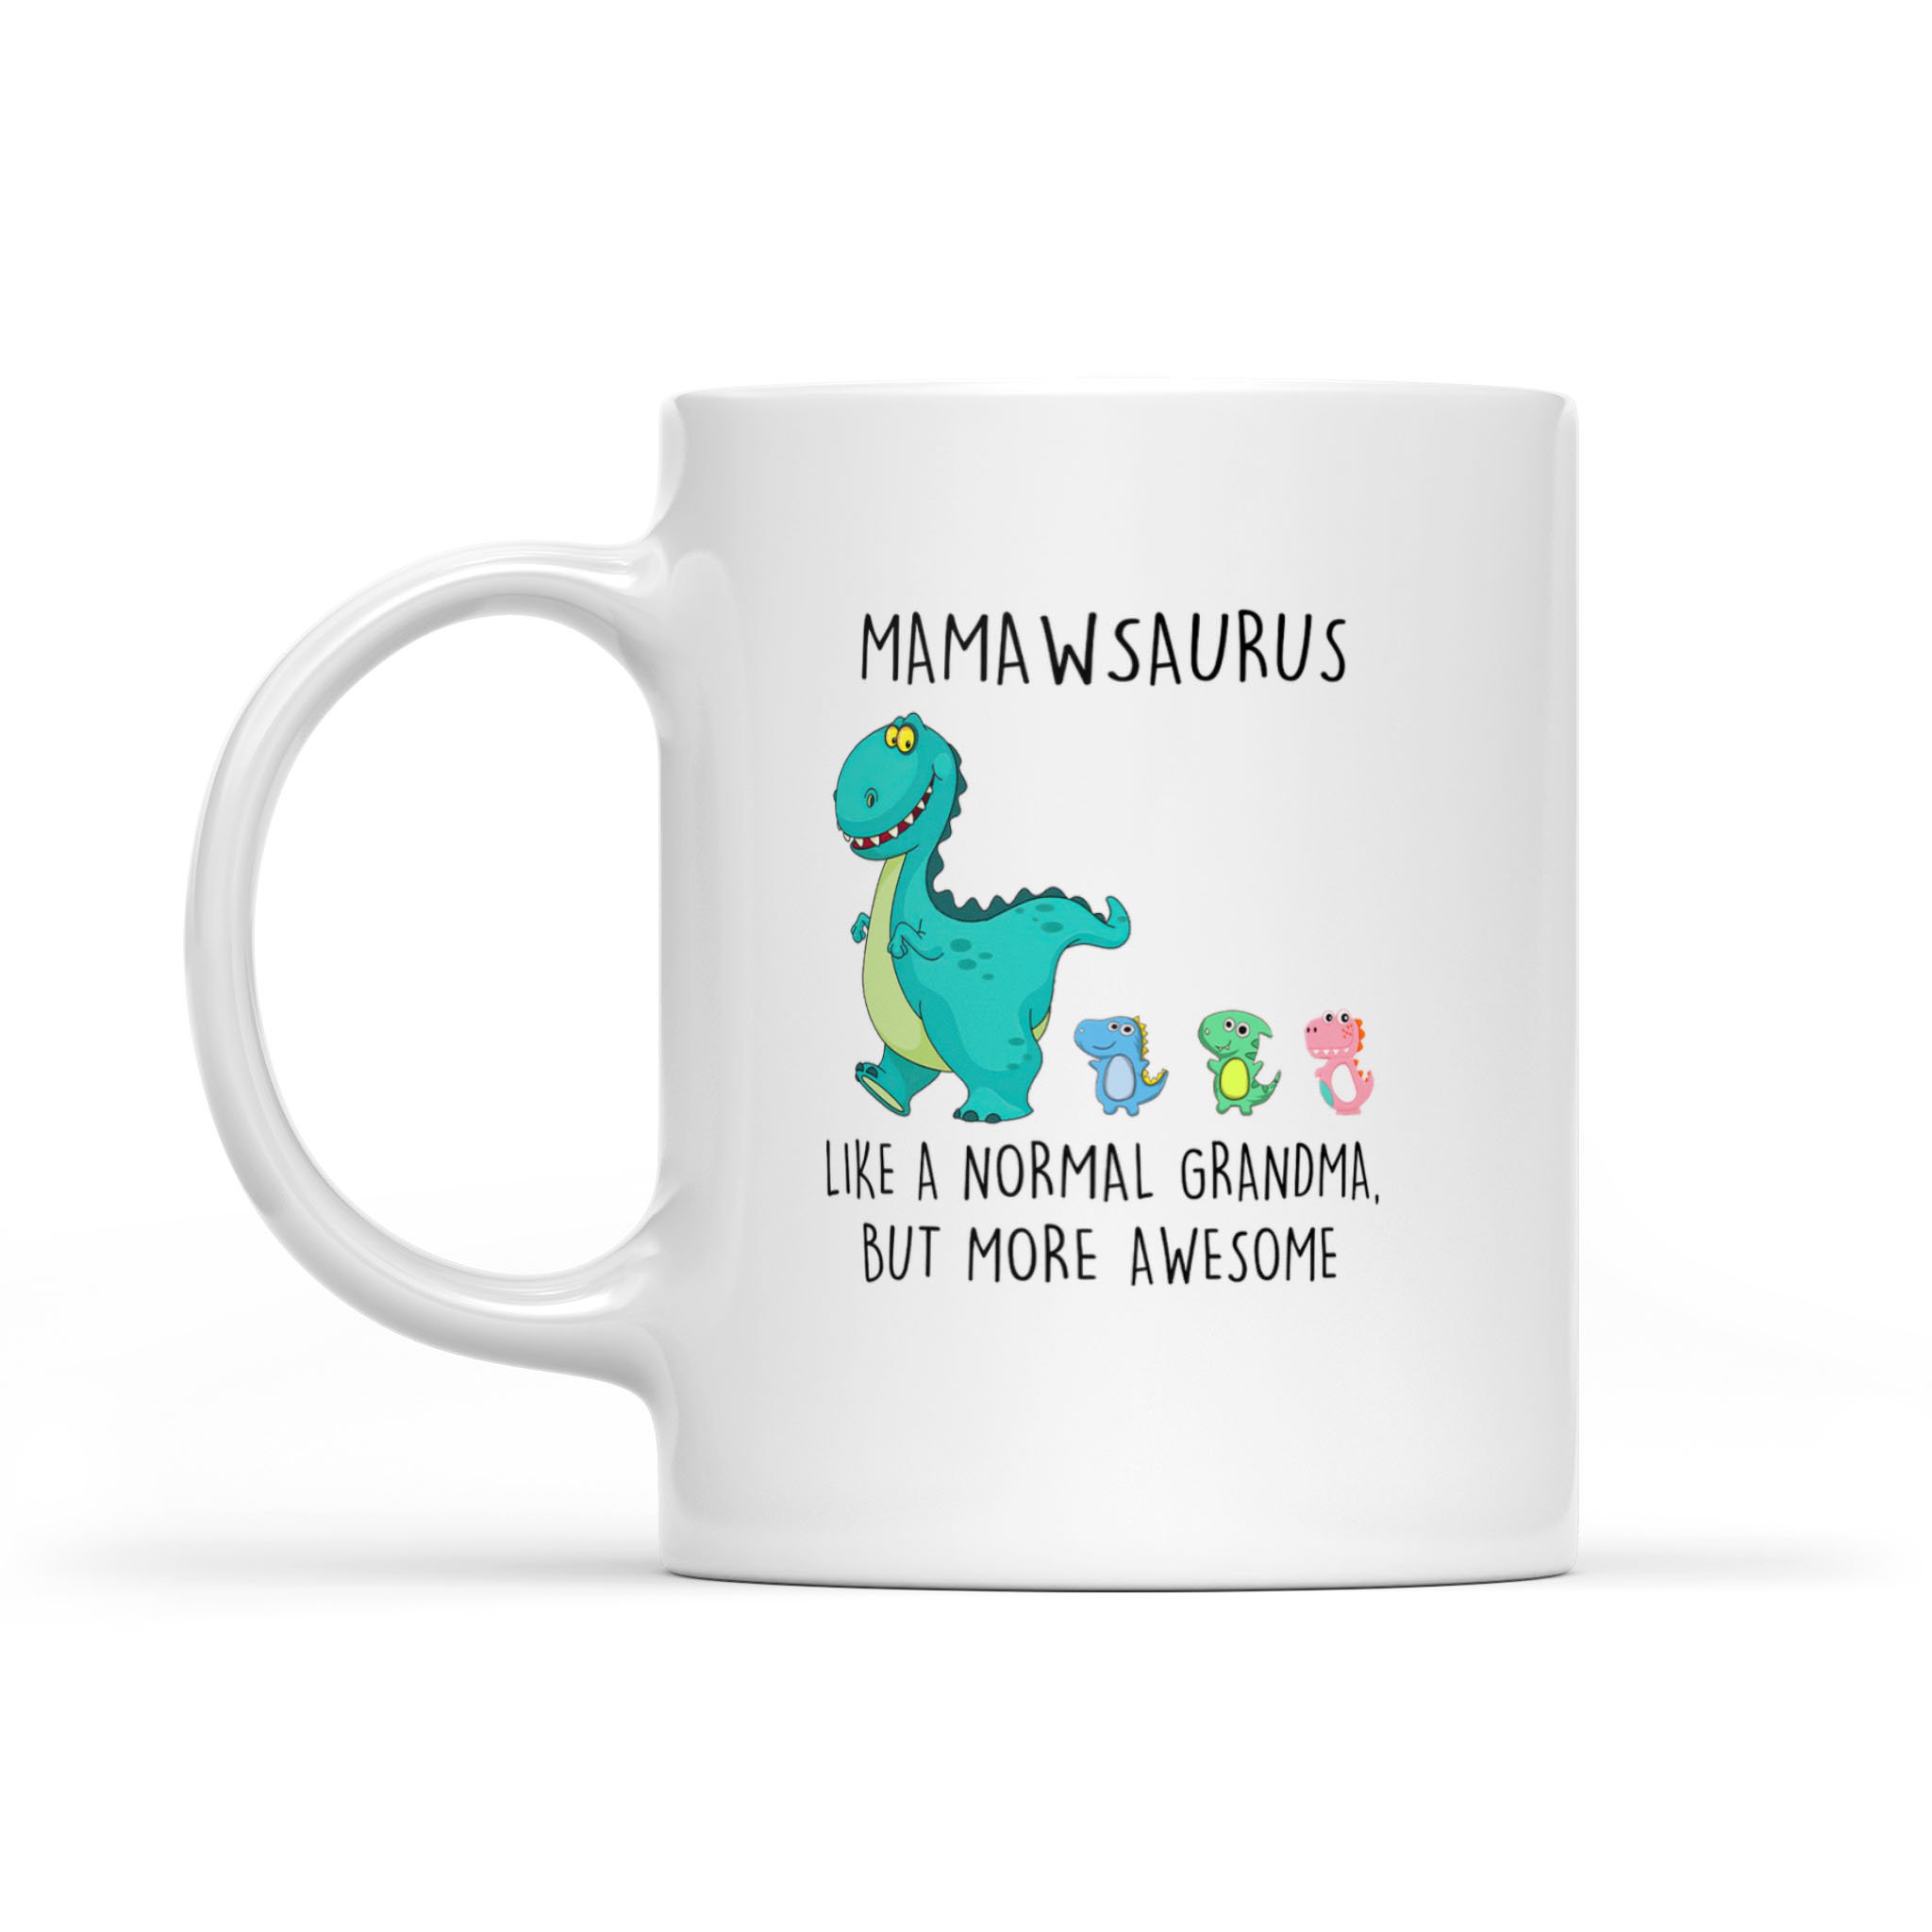 Mamawsaurus Like A Normal Grandma But More Awesome Mother’s Day Mug – White Mug